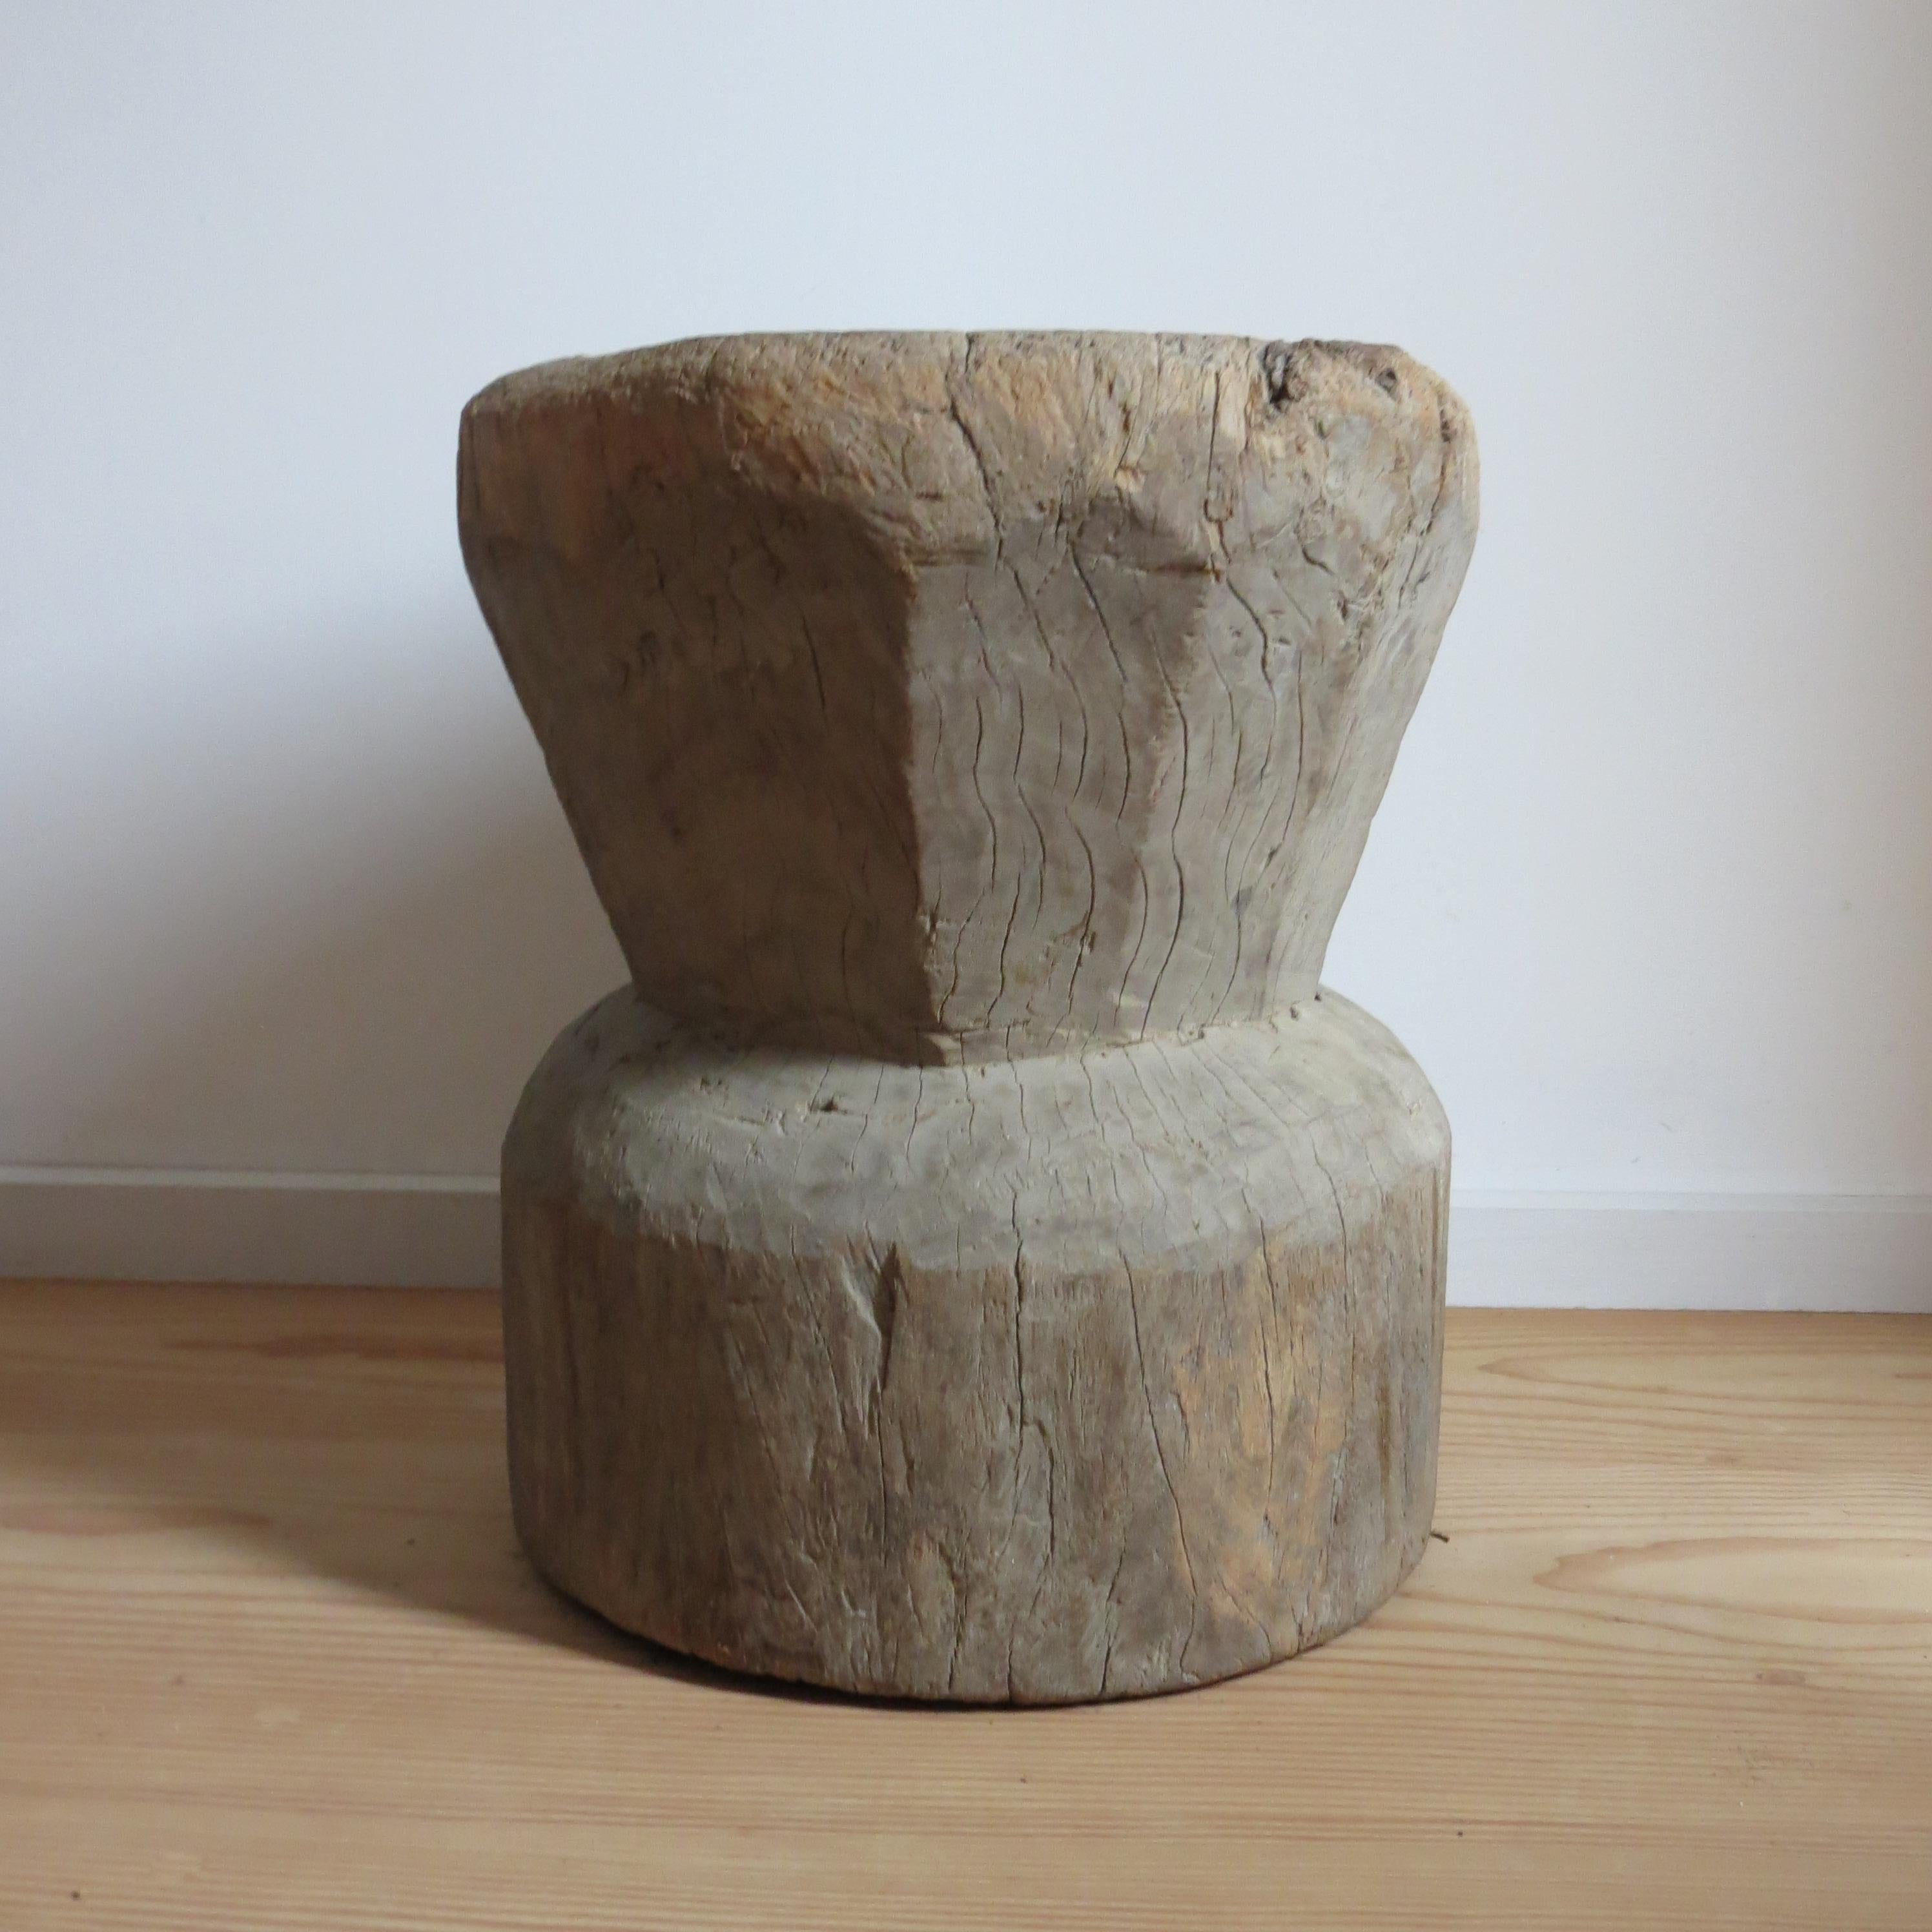 Ancienne table ou tabouret africain de style primitif rustique grand format Mortar en bois massif en vente 2